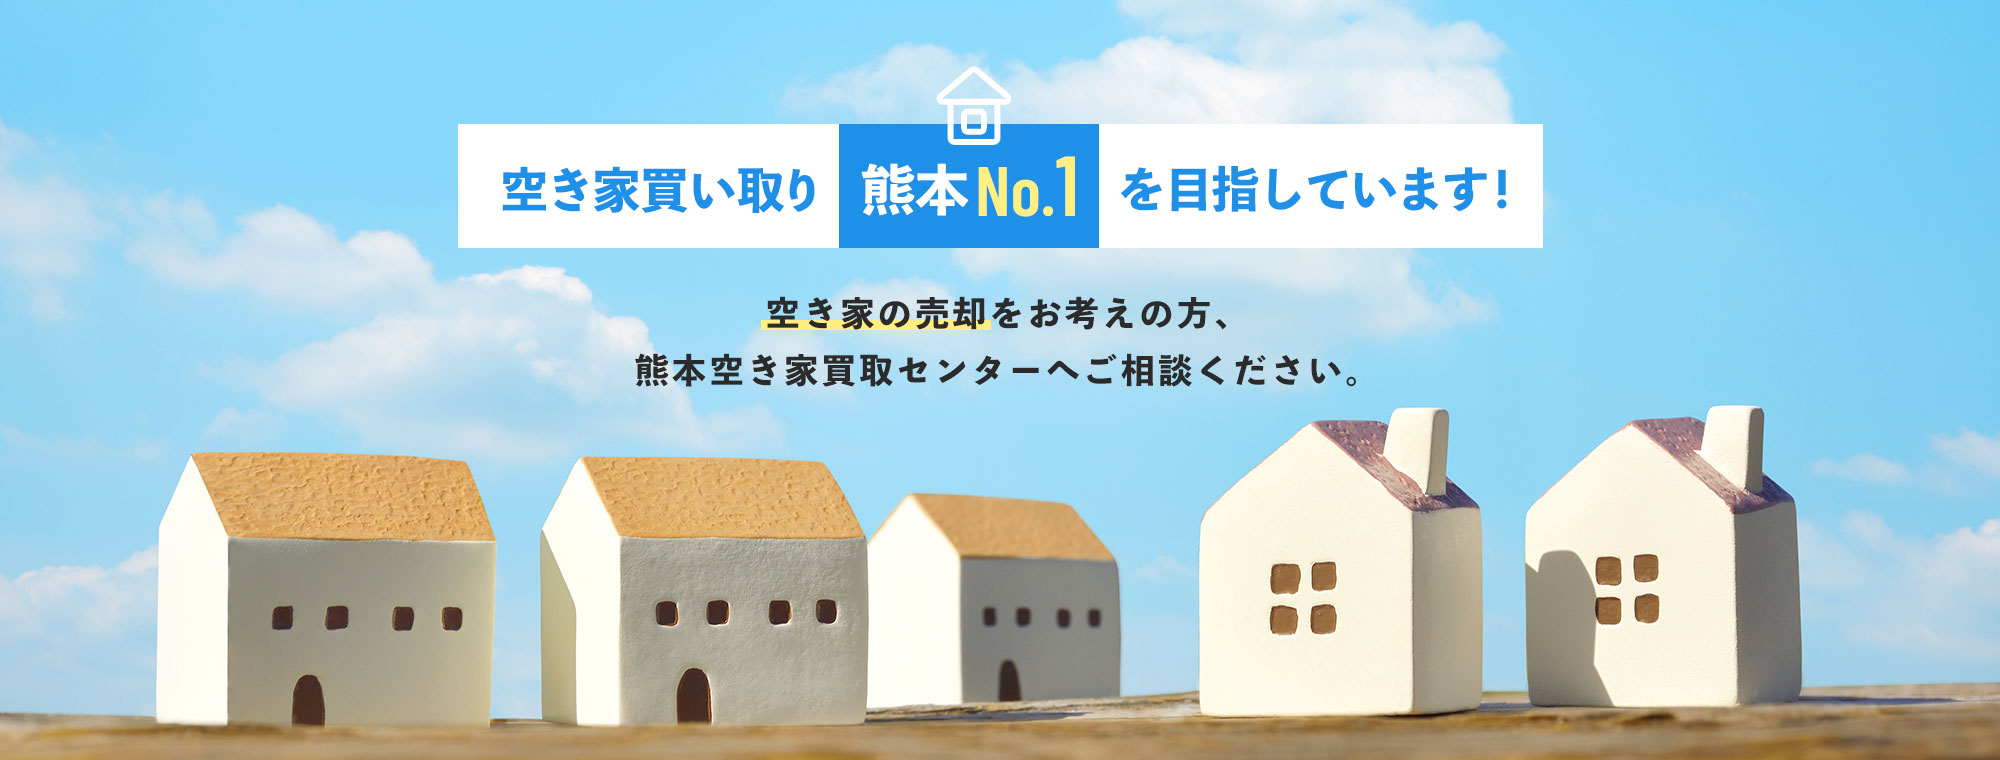 空き家買い取り熊本No1を目指しています！空き家の売却をお考えの方、熊本空き家買取センターへご相談ください。